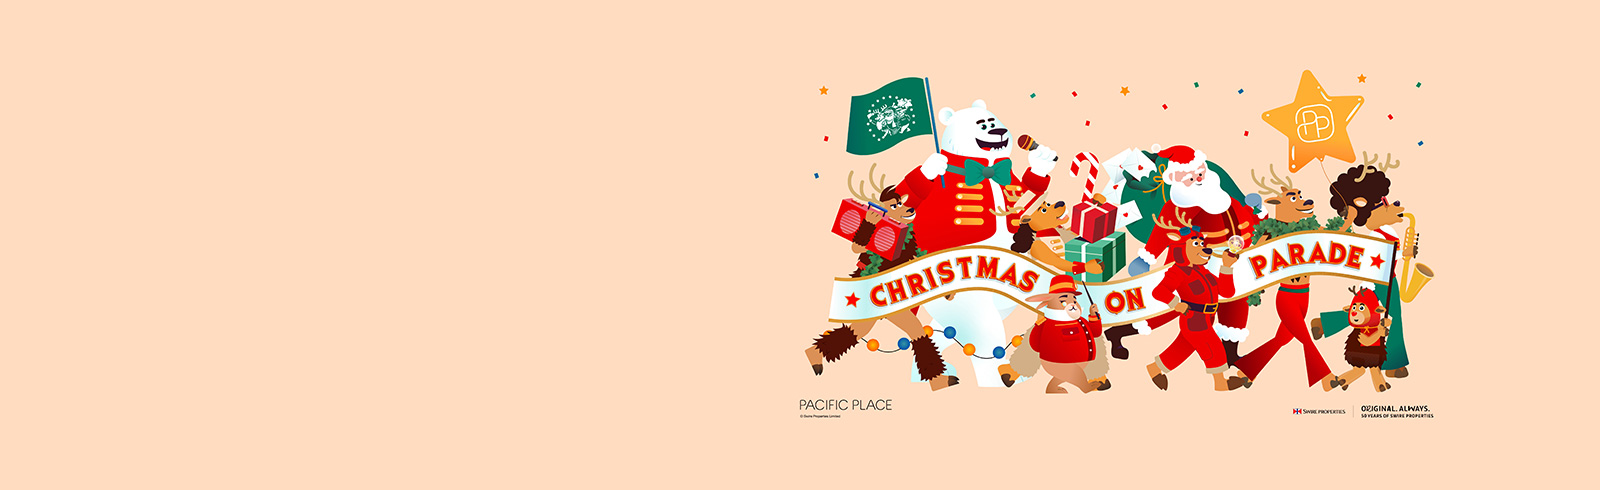 聖誕節的卡通布景, 用於推廣渣打國泰Mastercard太古廣場優惠